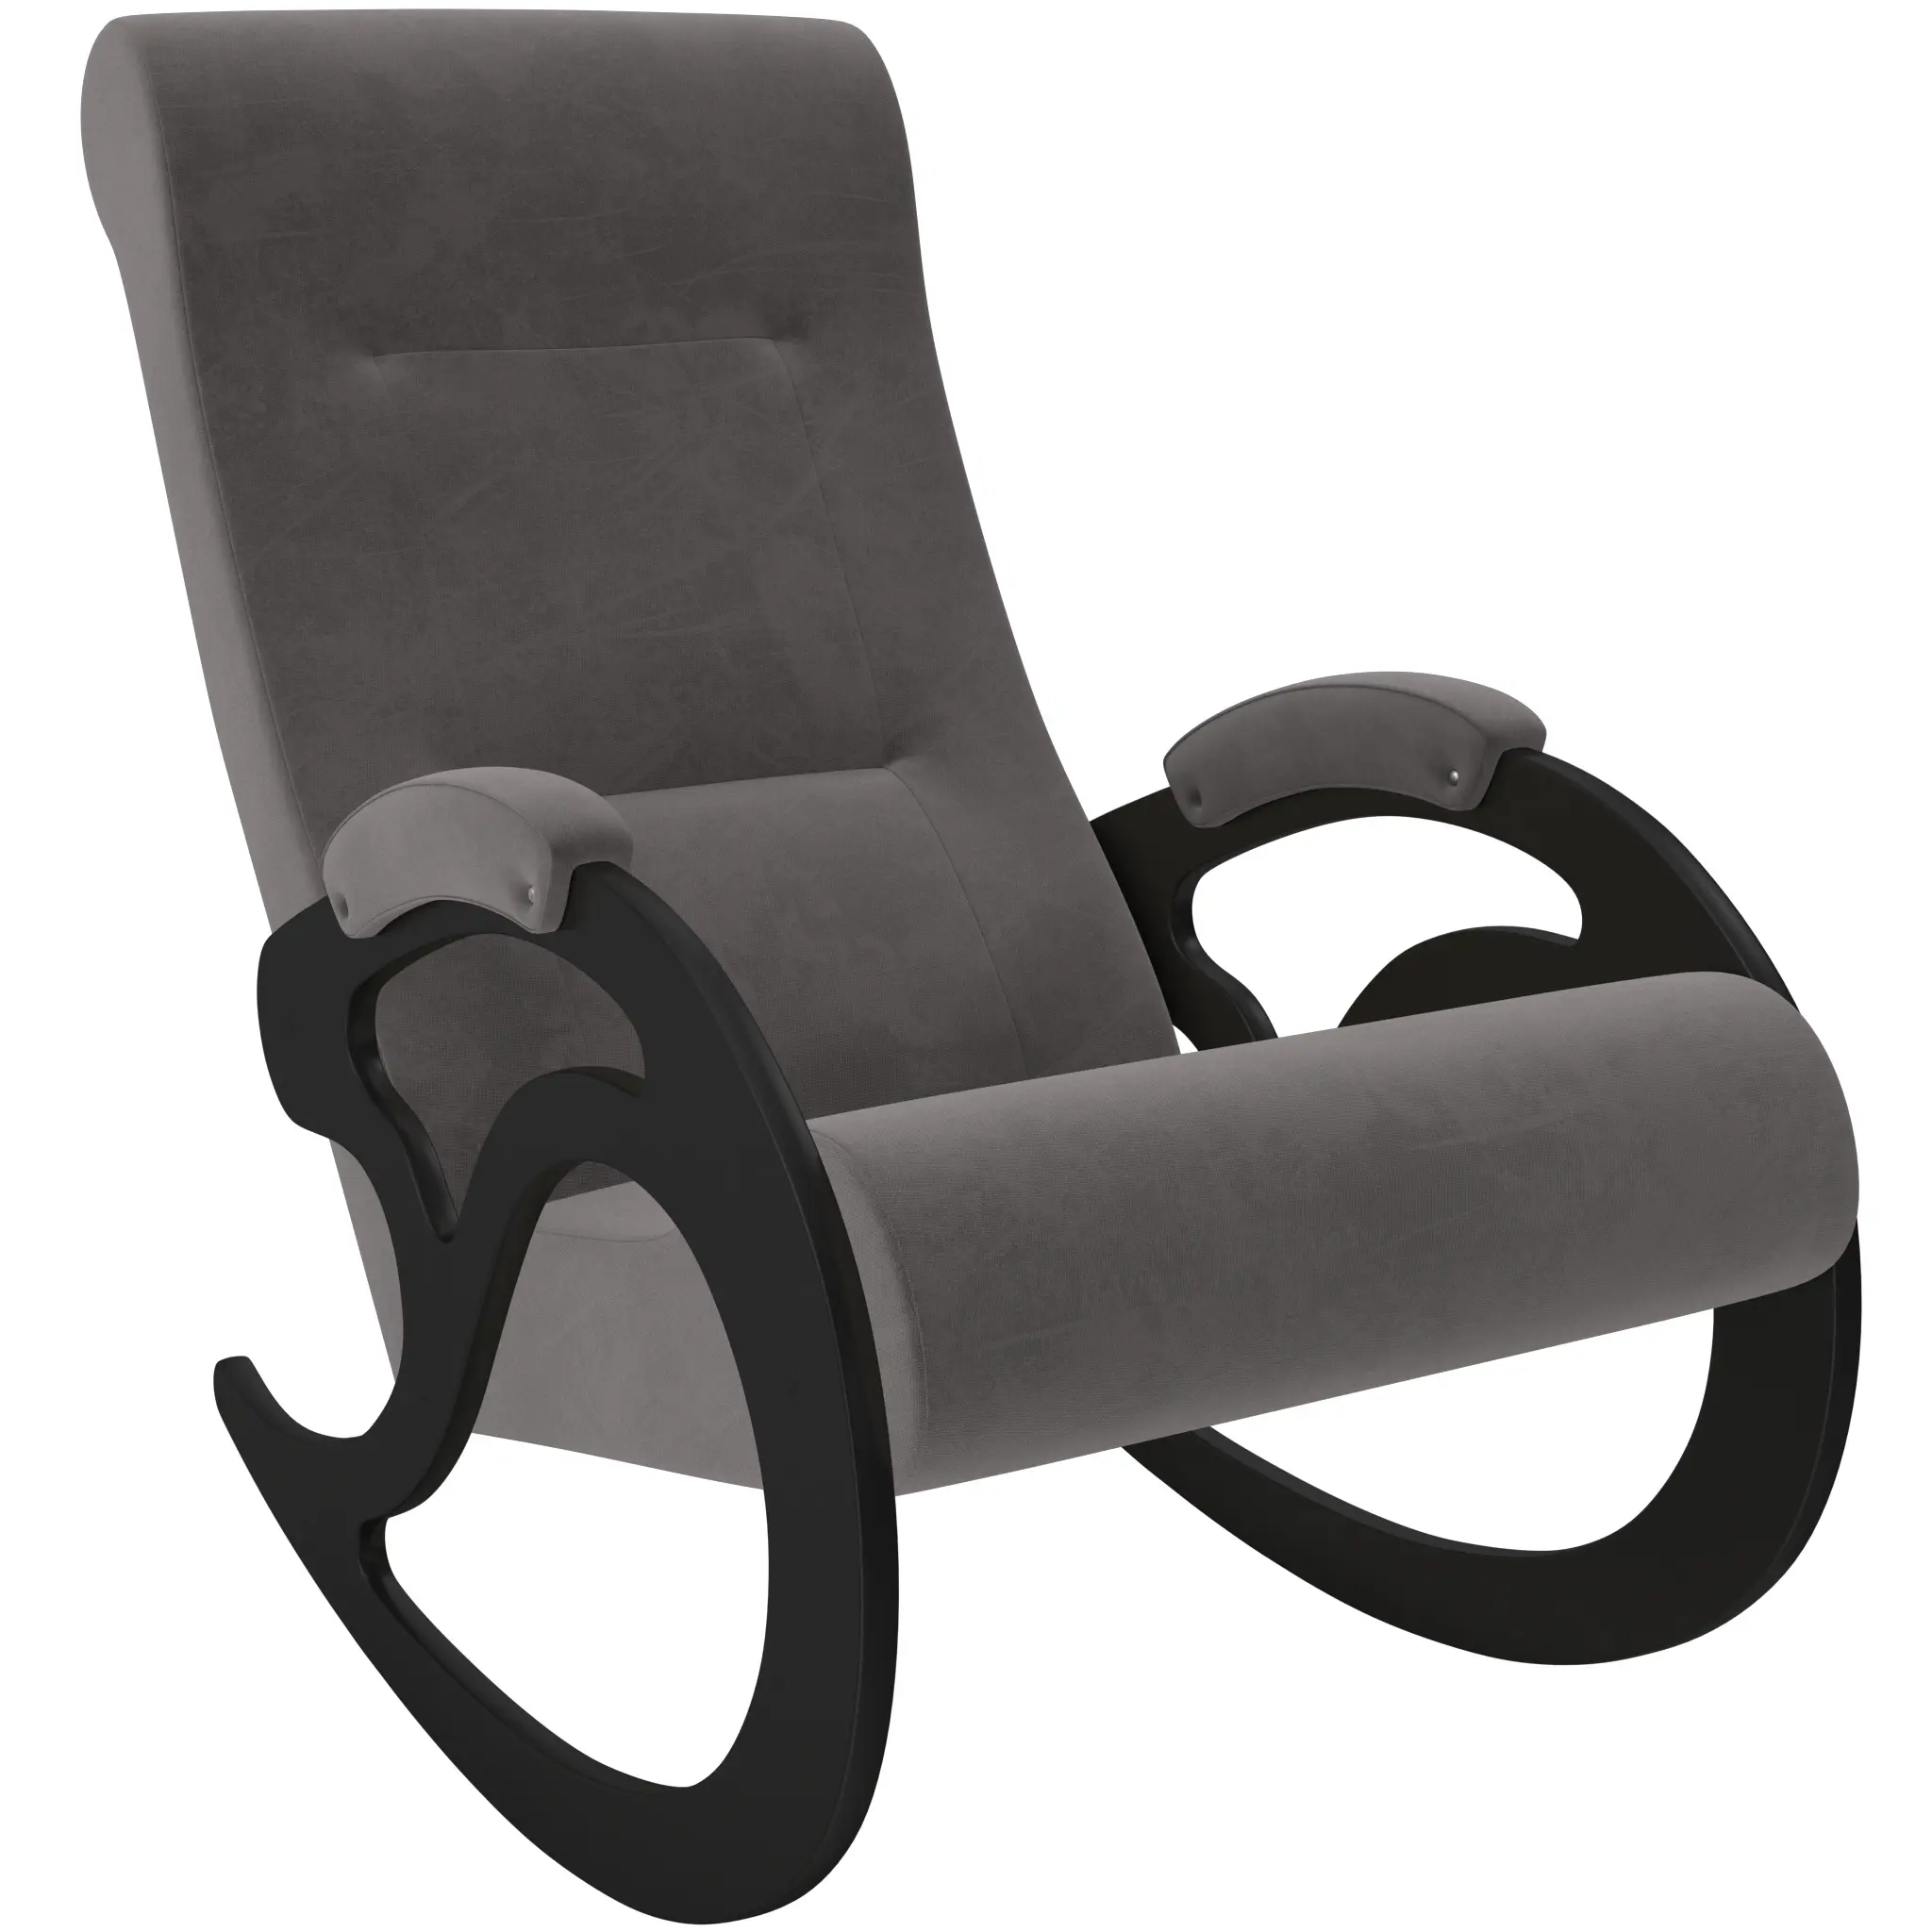 Кресло-качалка Модель 5